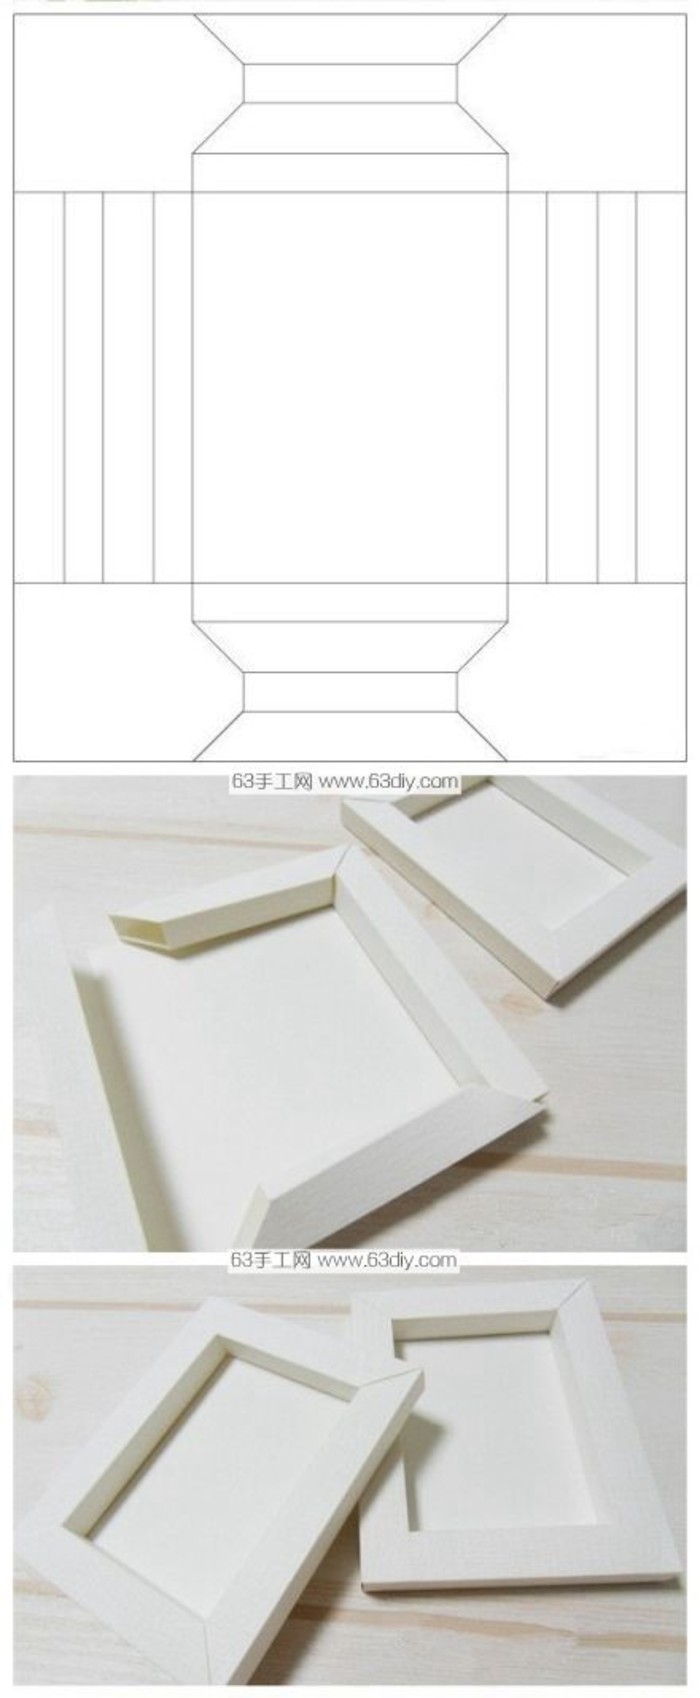 卡纸纸张制作折叠立体相框